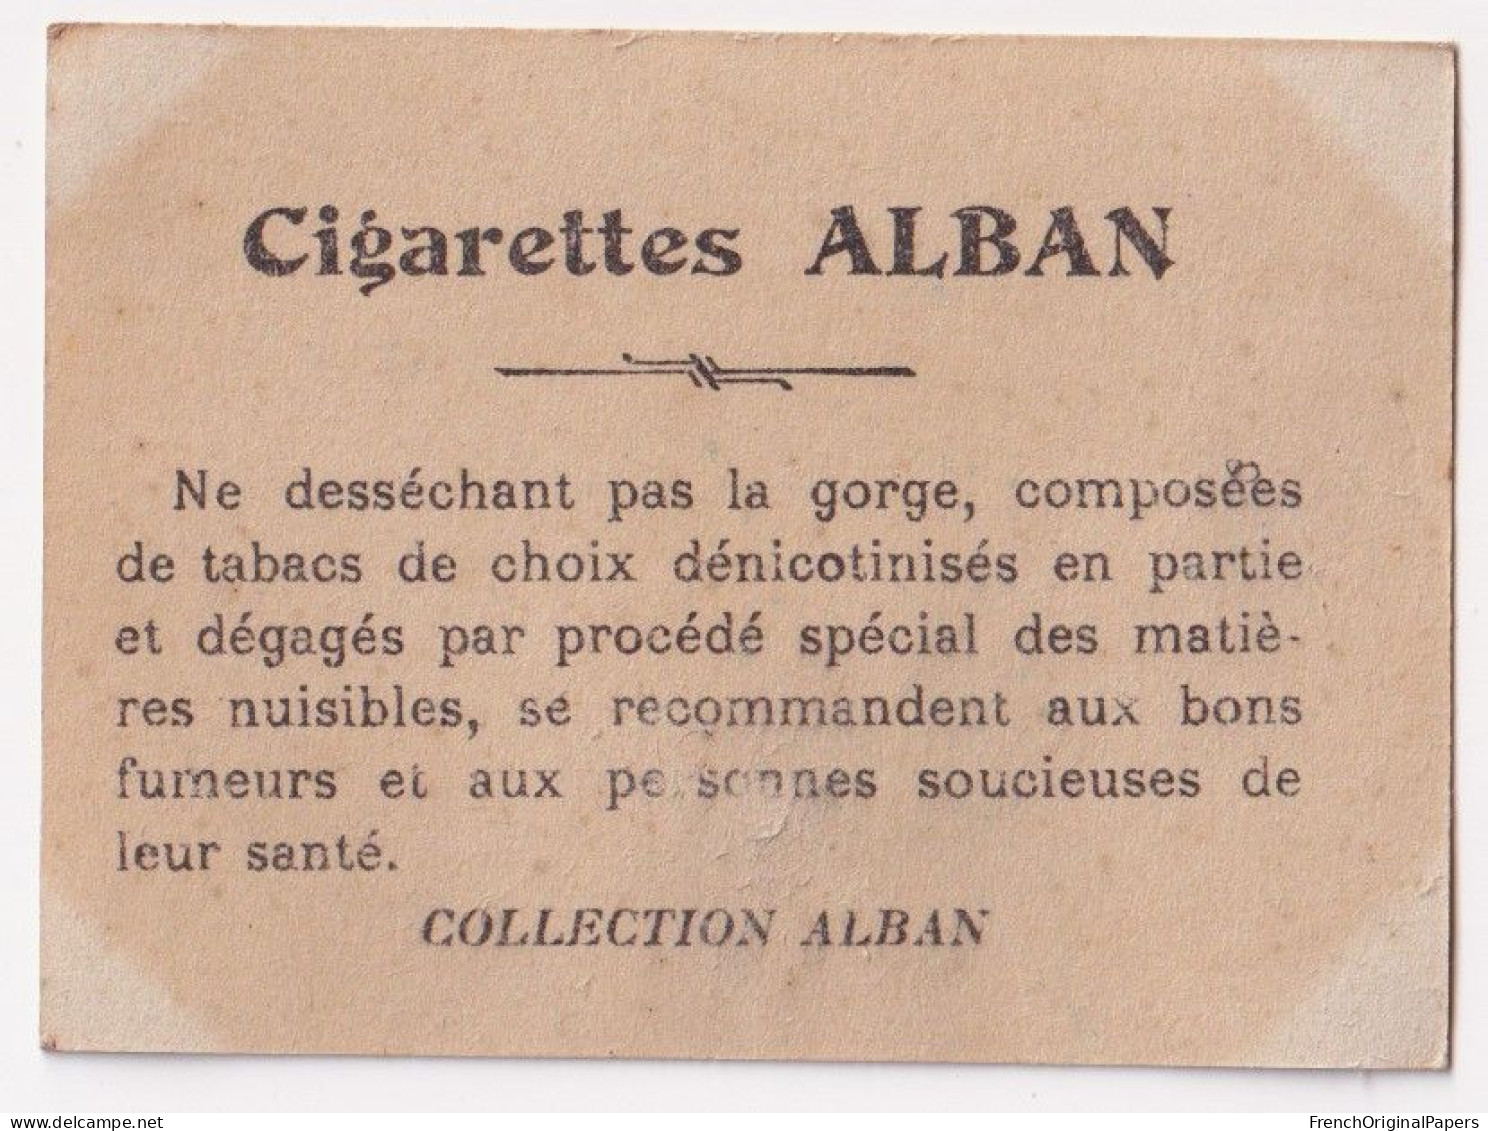 Cavaliéri - Cigarettes L. Alban 1910 Photo Femme Sexy Pin-up Vintage Artiste Cabaret Paris Bône Danse Danseuse A62-19 - Zigarettenmarken